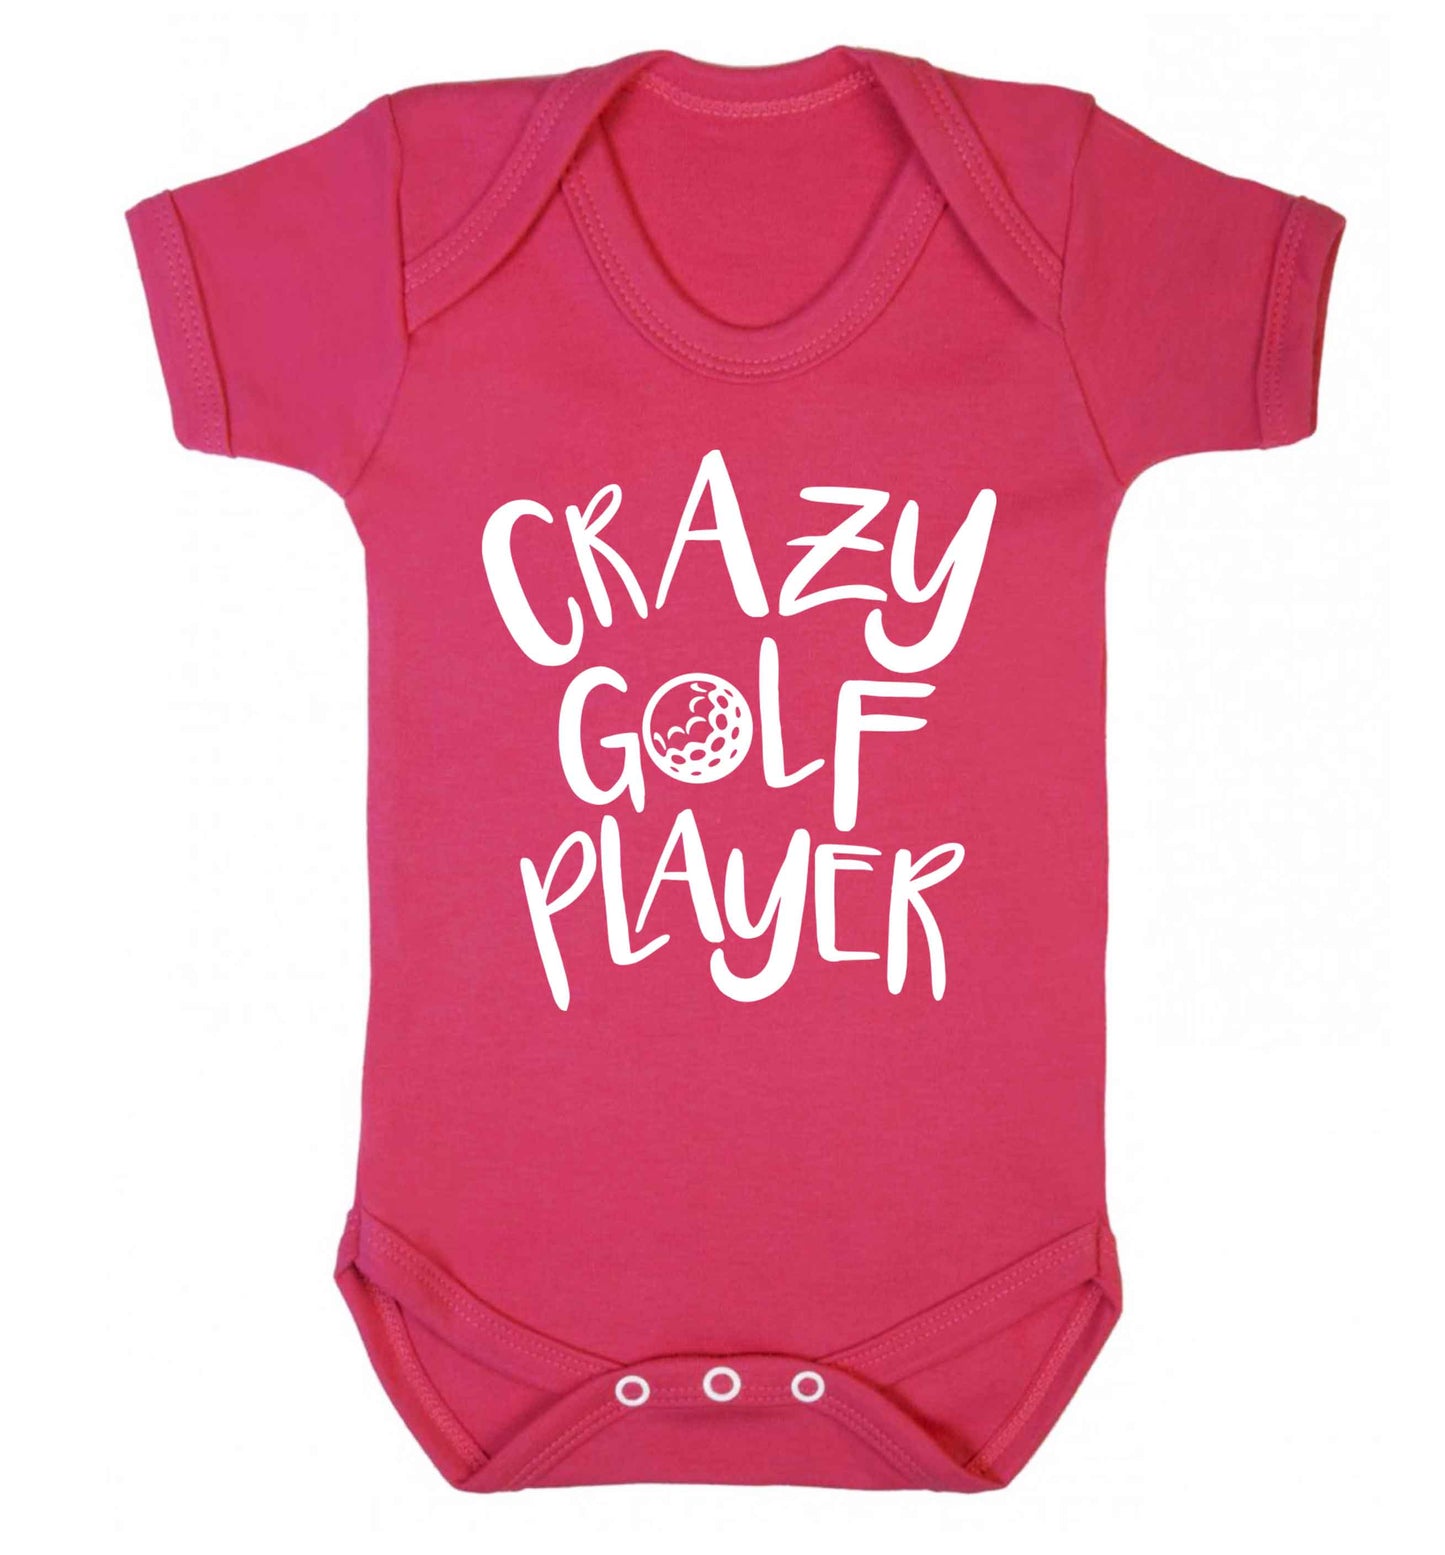 Crazy golf player Baby Vest dark pink 18-24 months